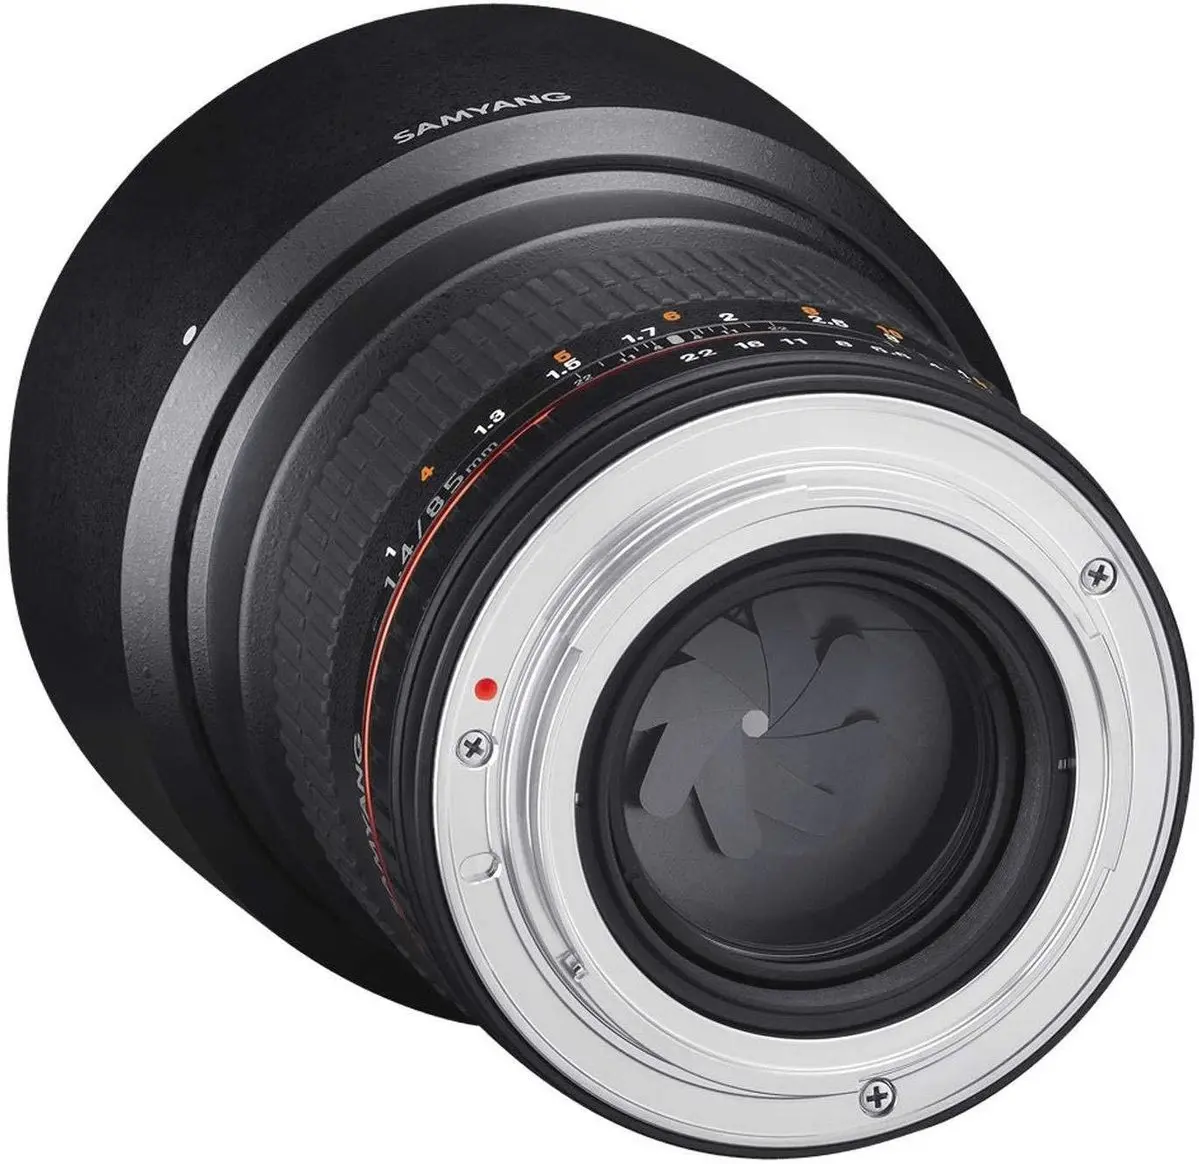 4. Samyang 85mm f/1.4 Aspherical IF (Sony E) Lens